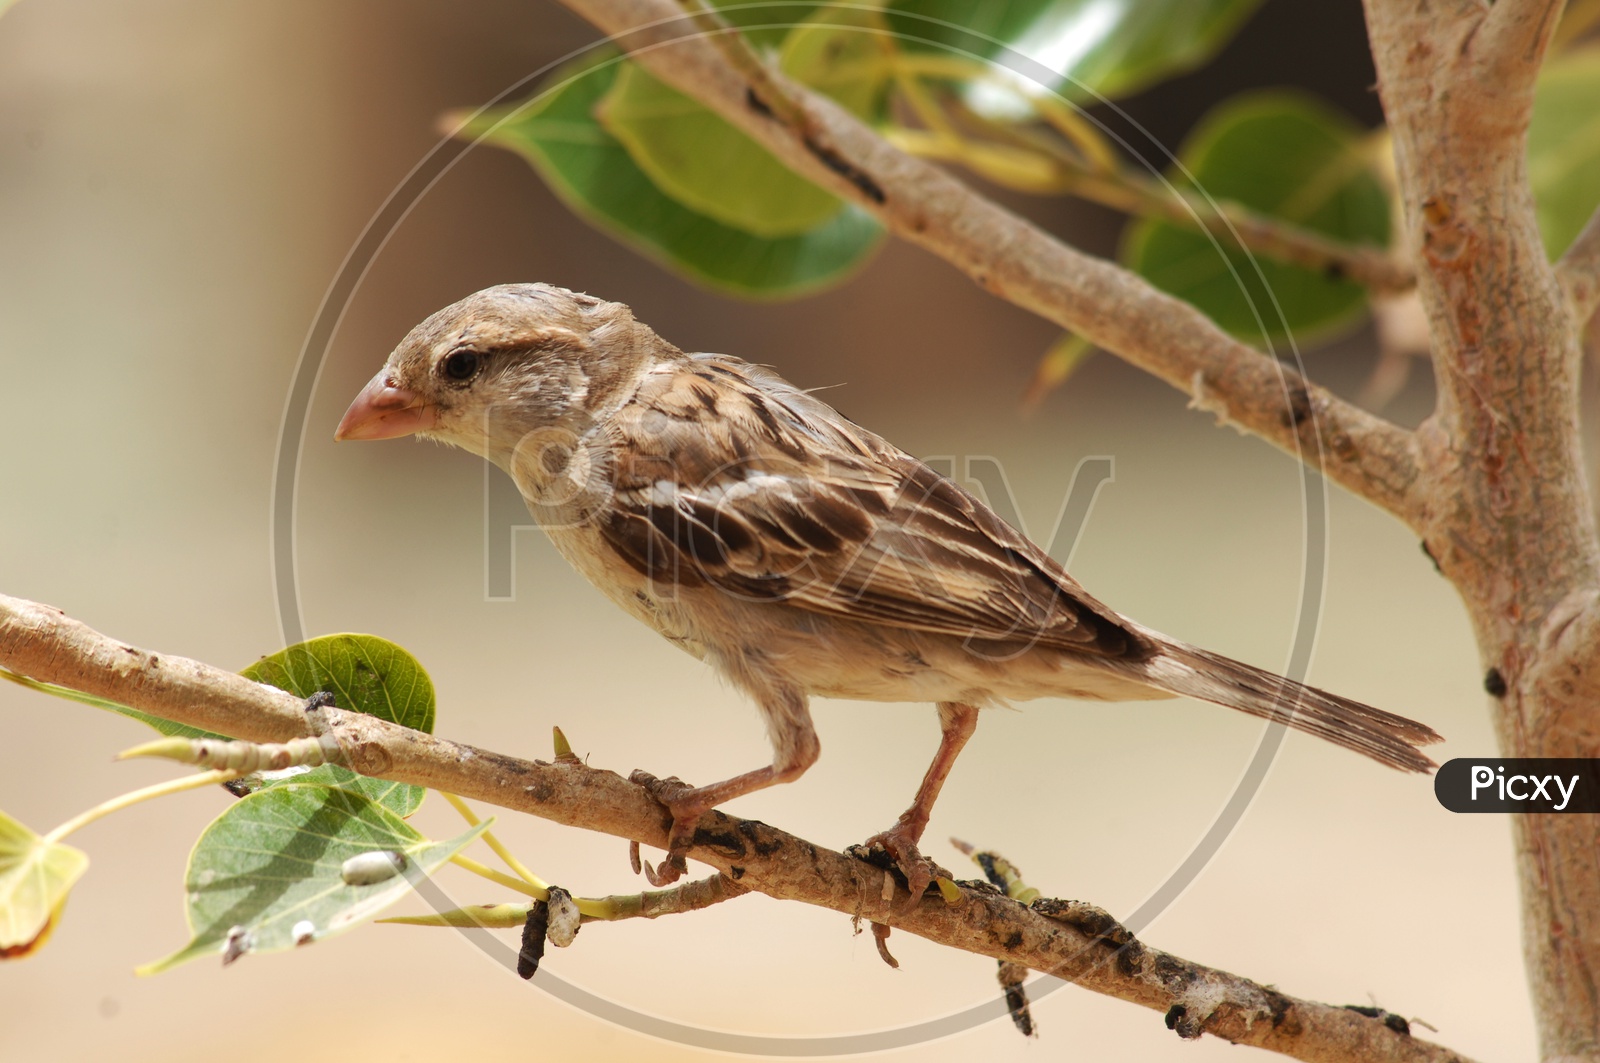 A Field Sparrow